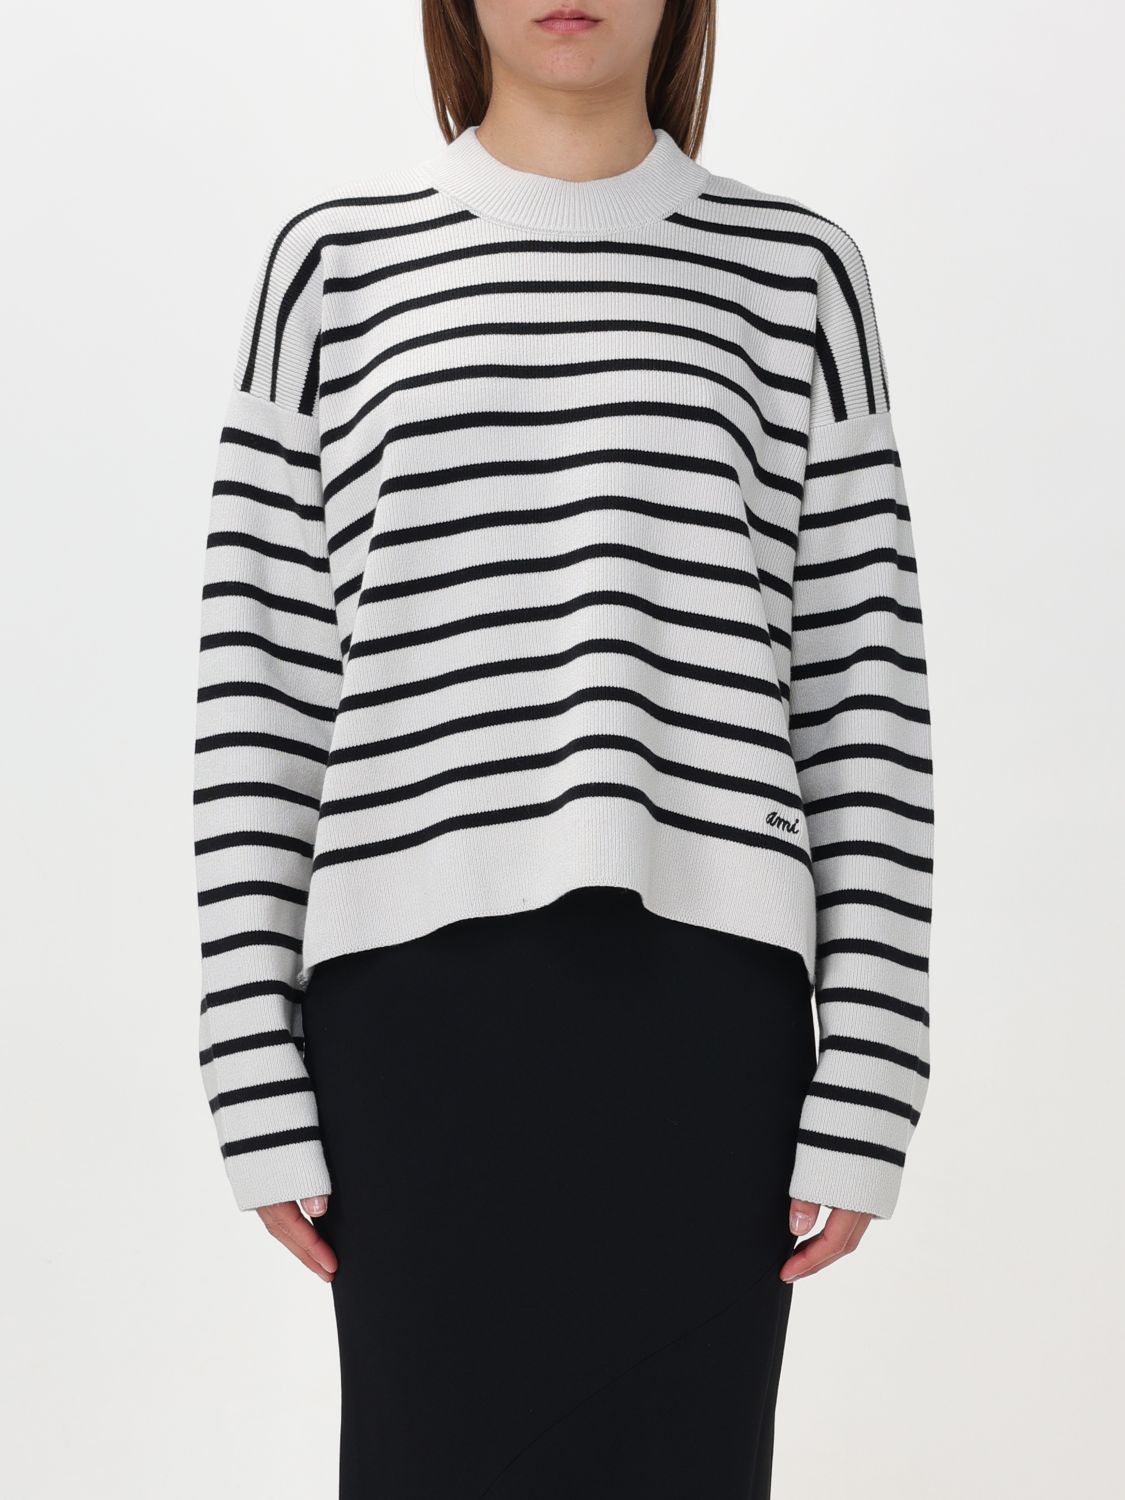 Shop Ami Alexandre Mattiussi Sweatshirt Ami Paris Woman Color Black